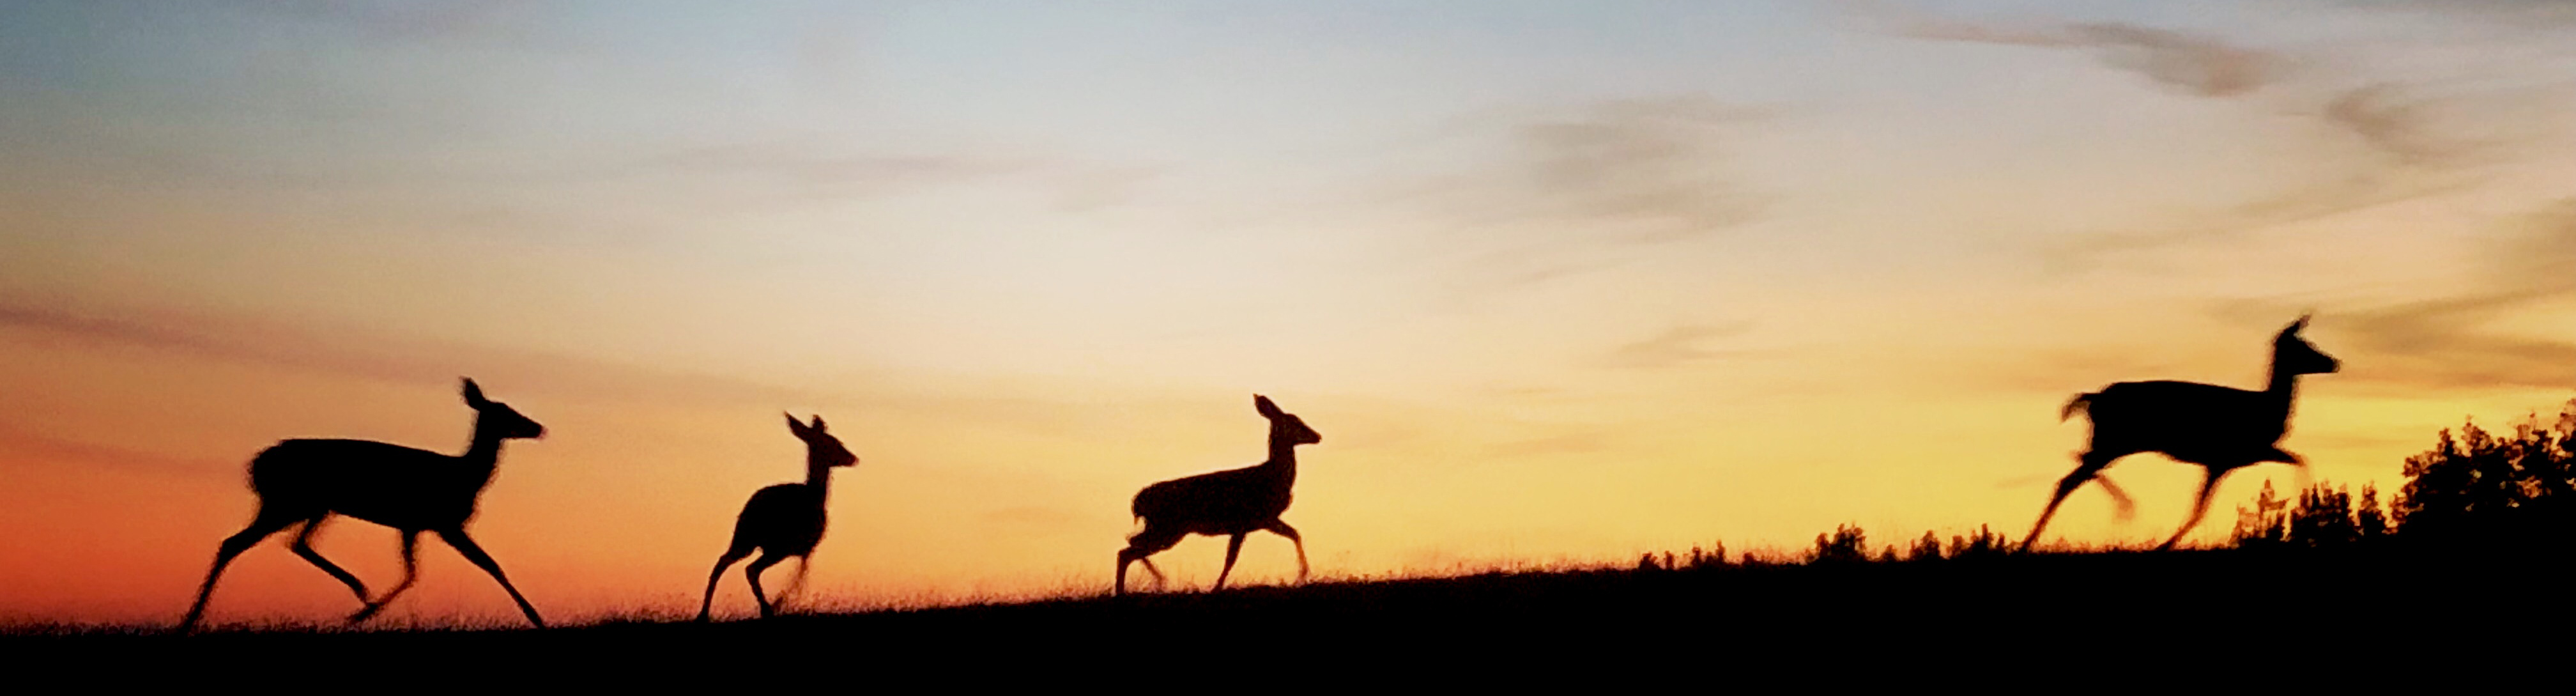 deer running across a meadow at sunset